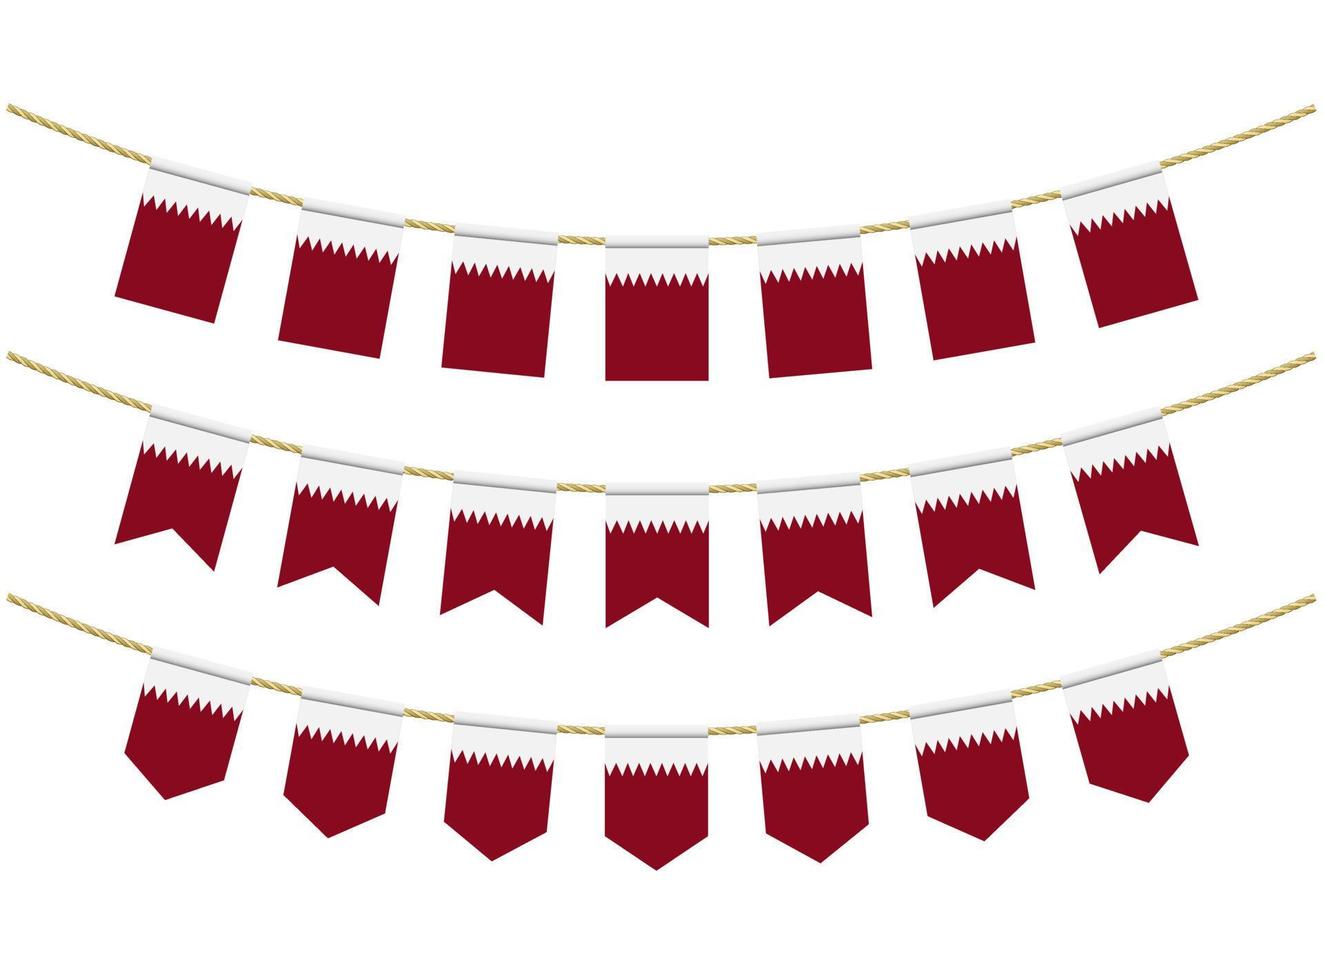 Bandera de qatar en las cuerdas sobre fondo blanco. conjunto de banderas patrióticas del empavesado. decoración del empavesado de la bandera de qatar vector